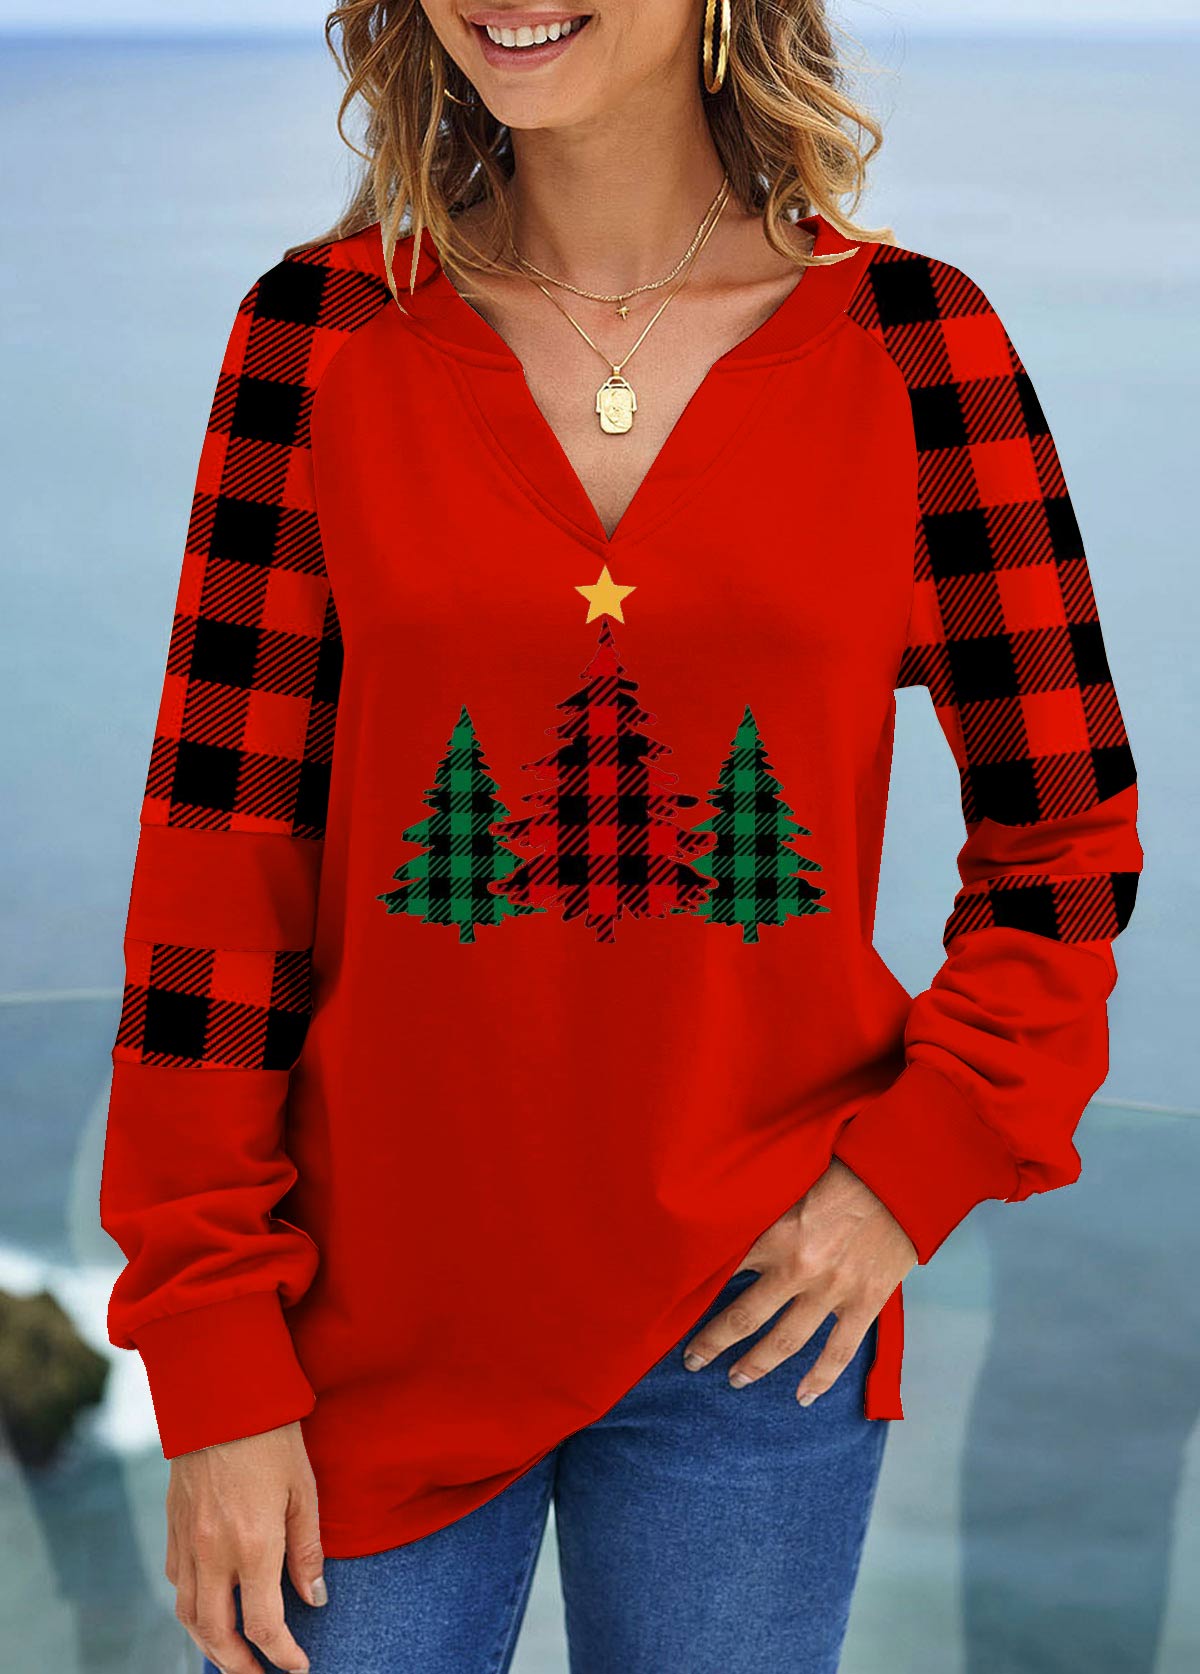 Christmas Tree Print Red V Neck Sweatshirt